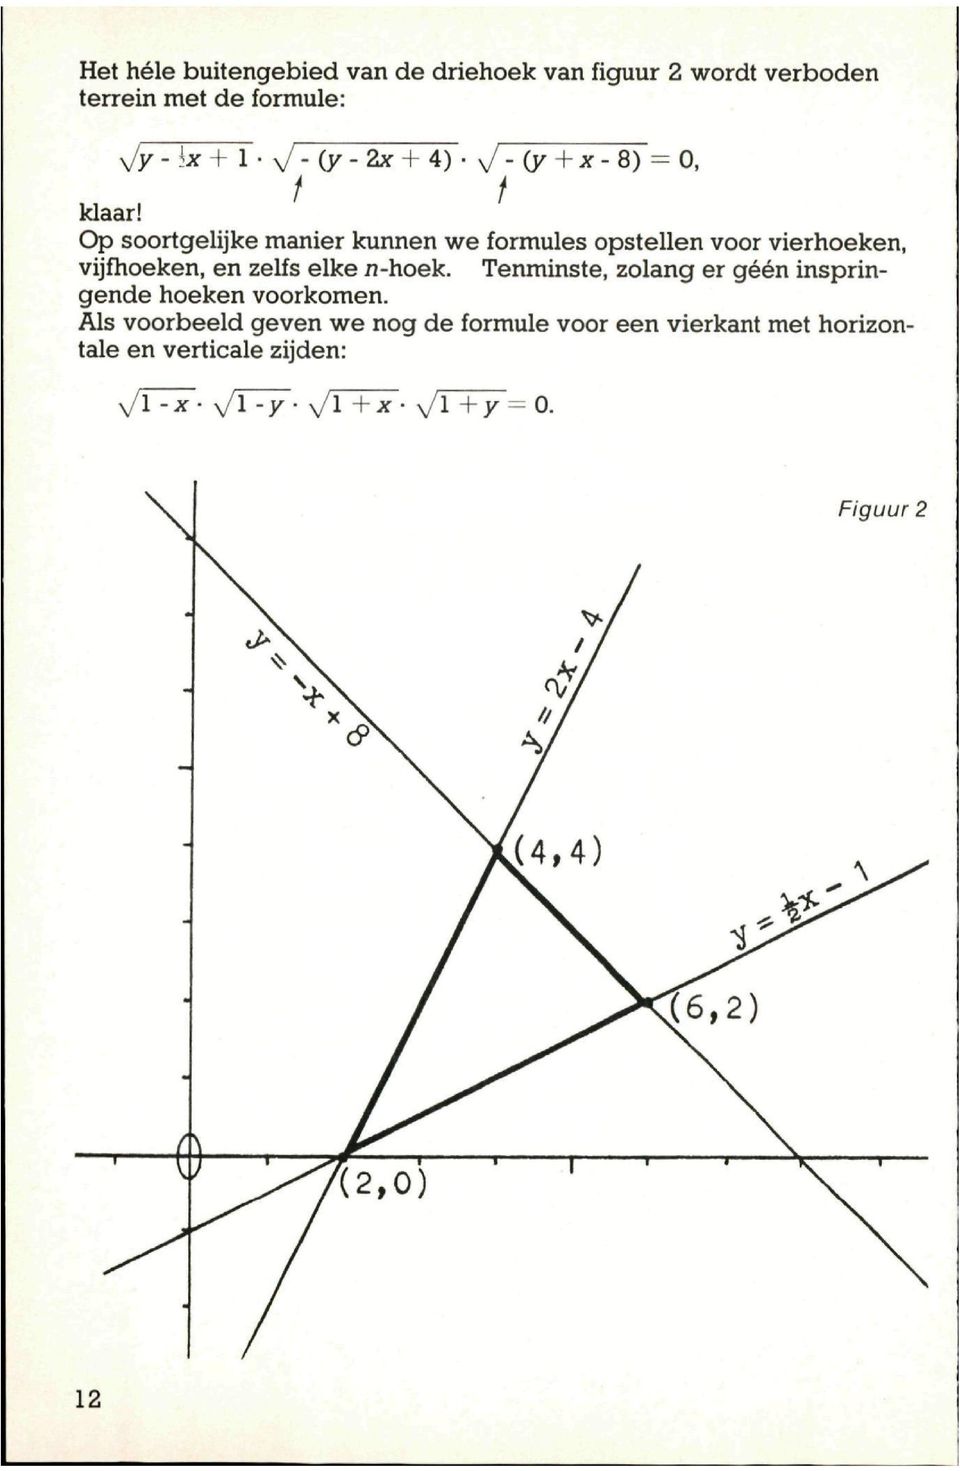 Op soortgelijke manier kunnen we formules opstellen voor vierhoeken, vijfhoeken, en zelfs elke n-hoek.